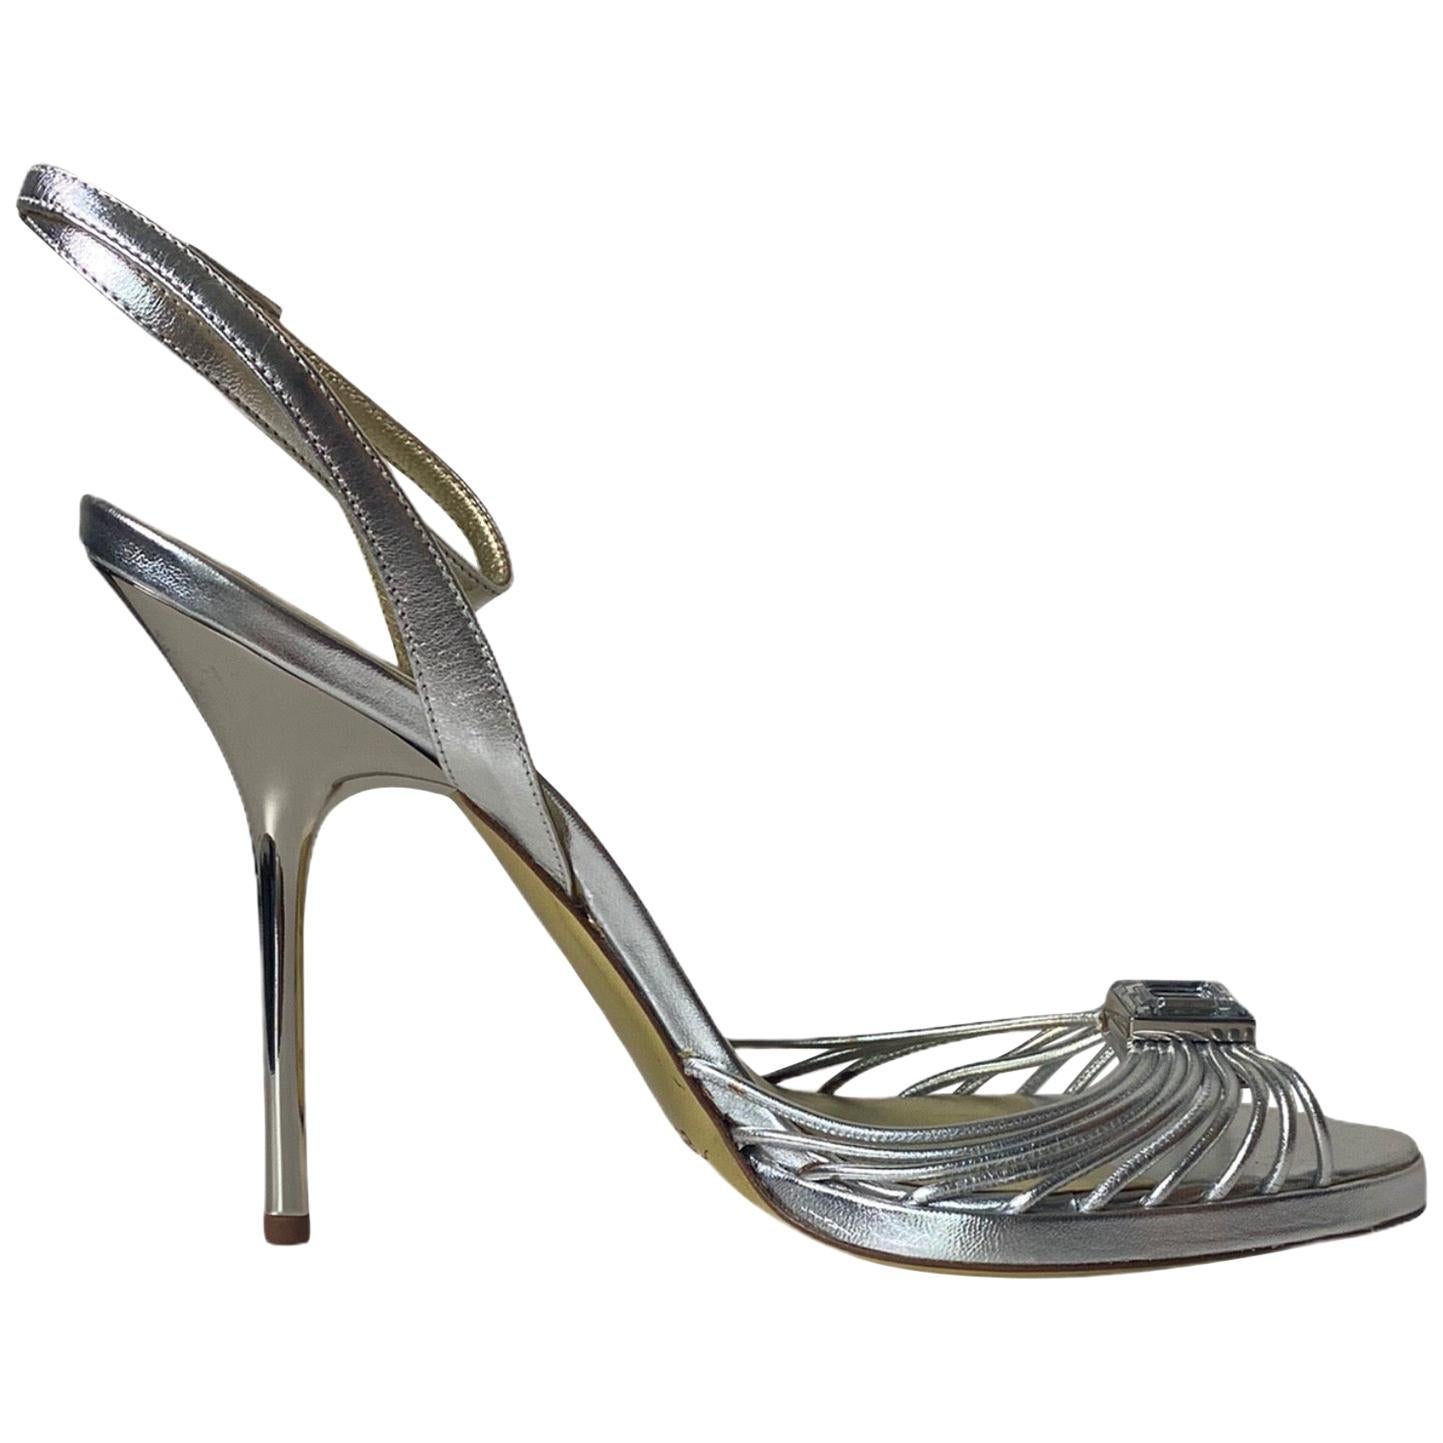 UNWORN Escada Silber Metallic Leder Riemchen Stiletto High Heels Sandalen mit Absatz 38,5